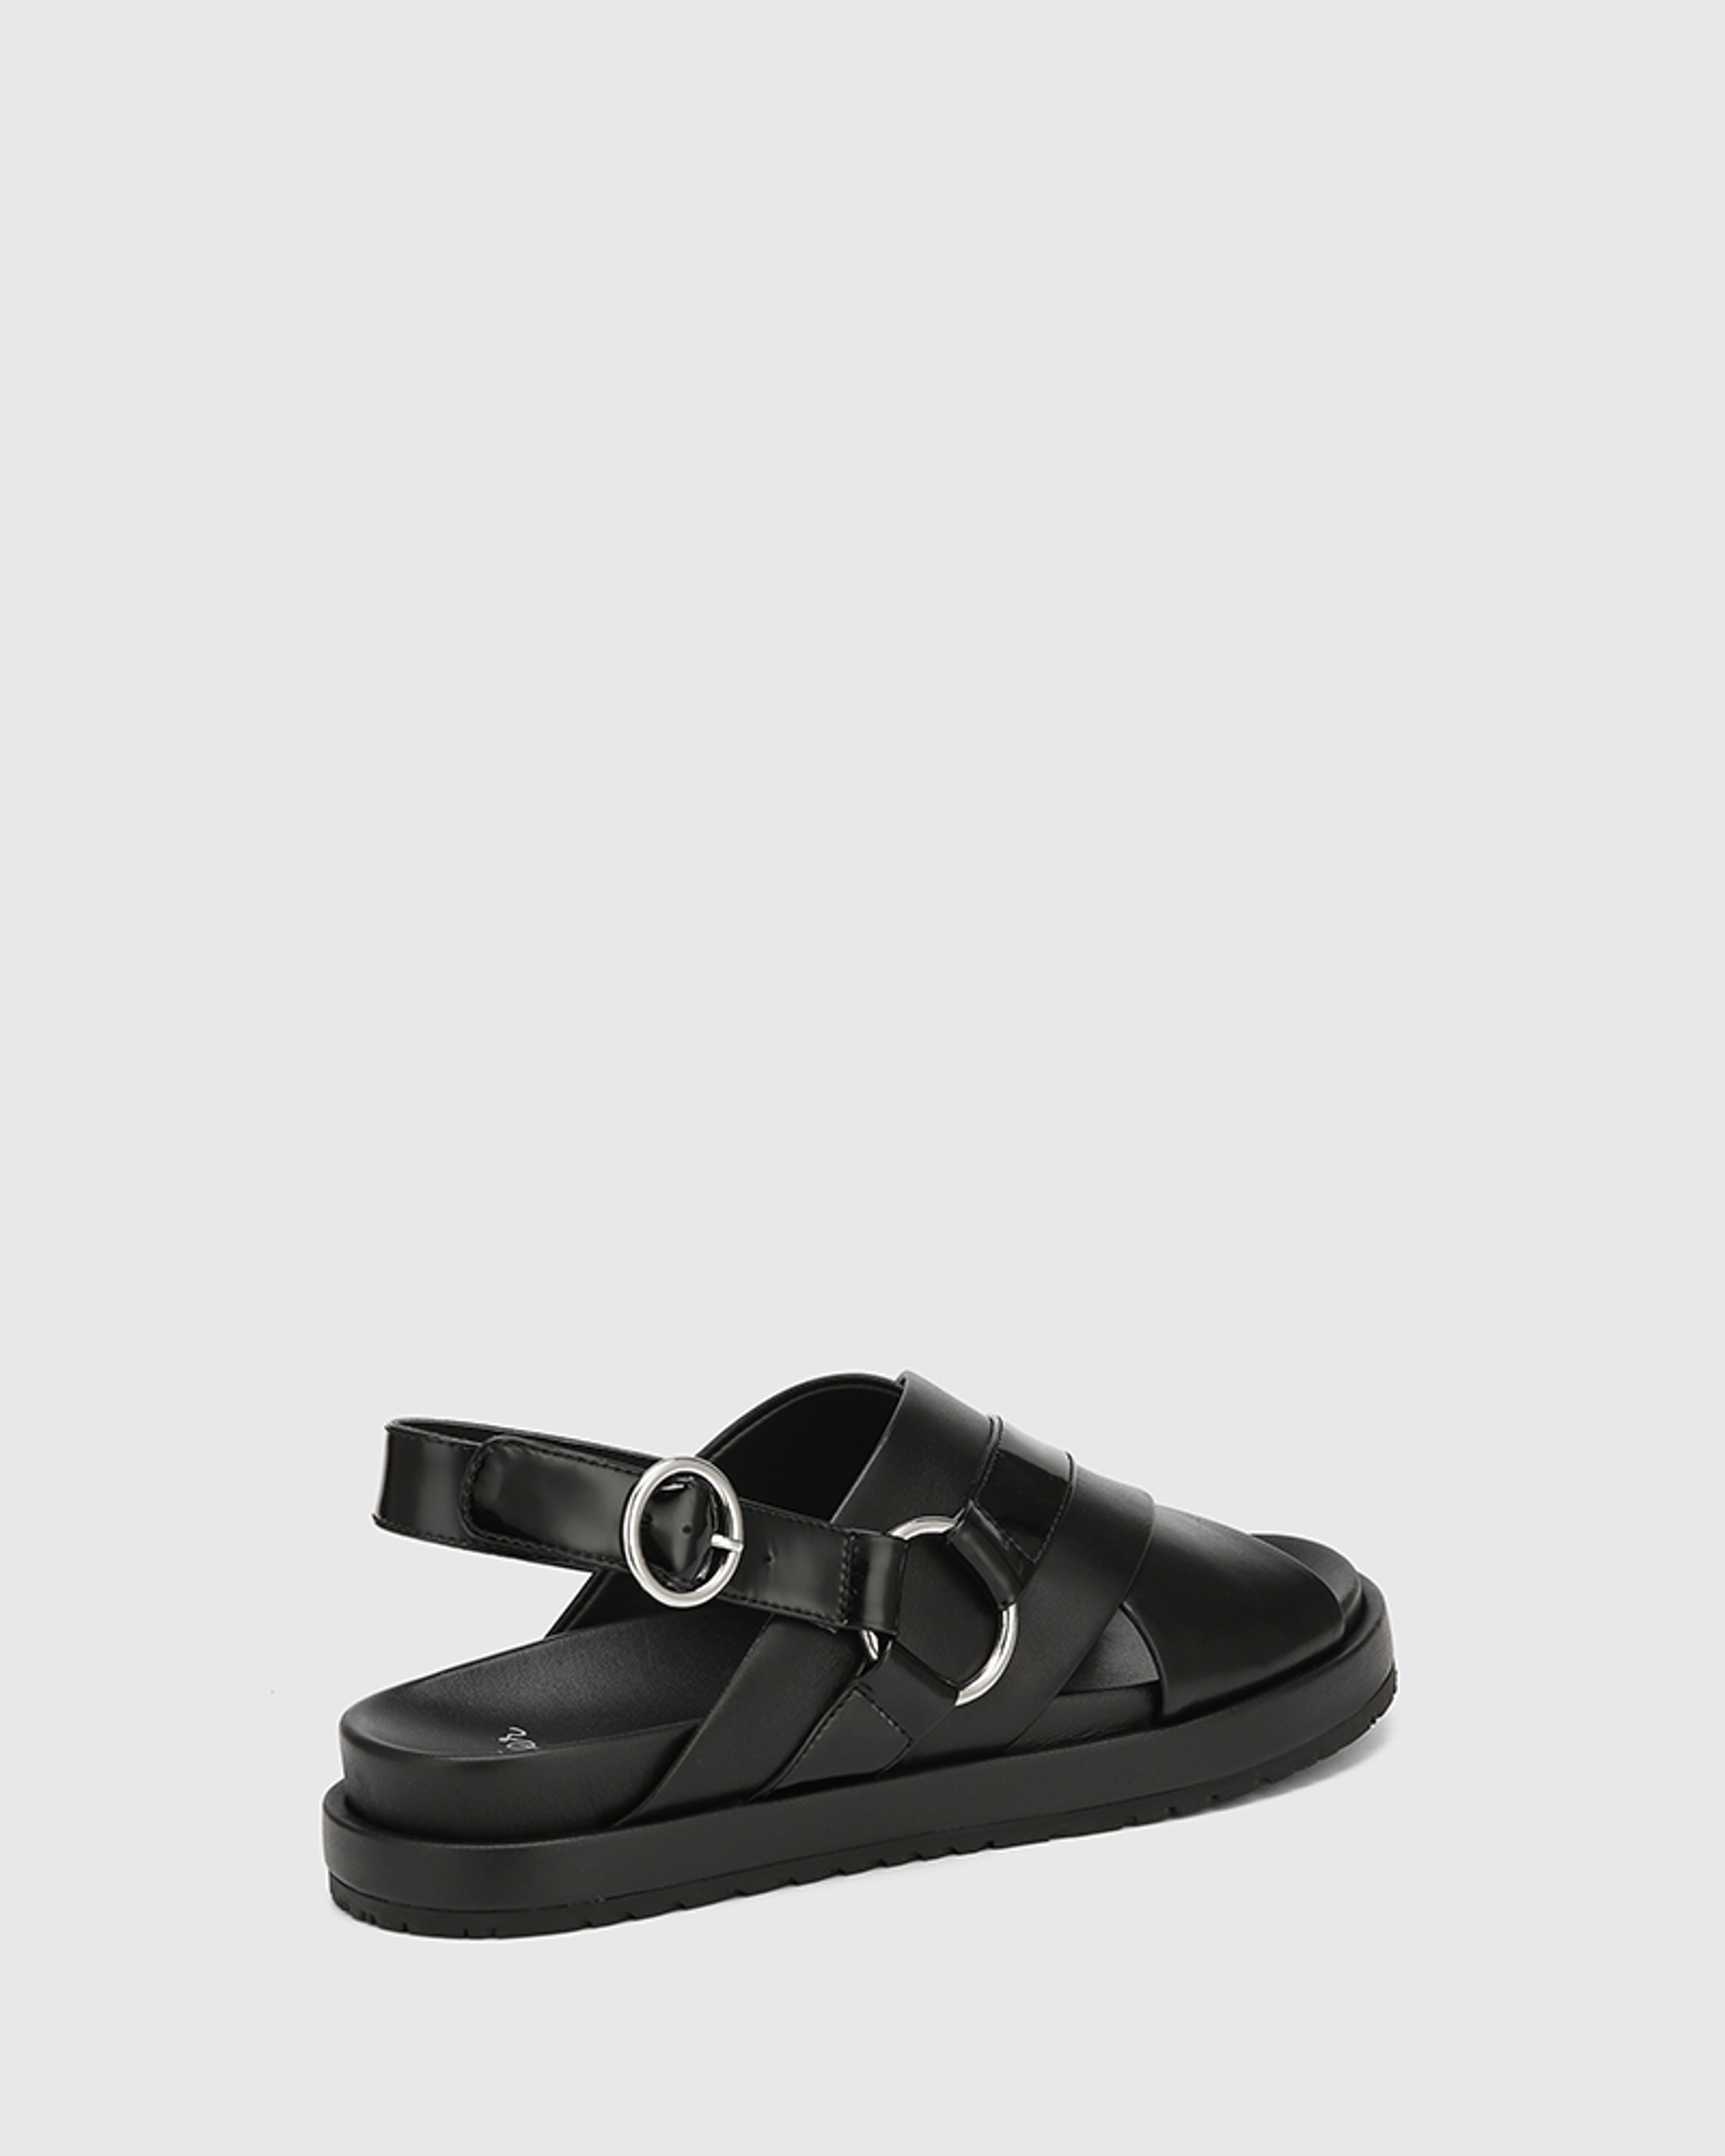 Brigid Black Leather Flatform Sandal